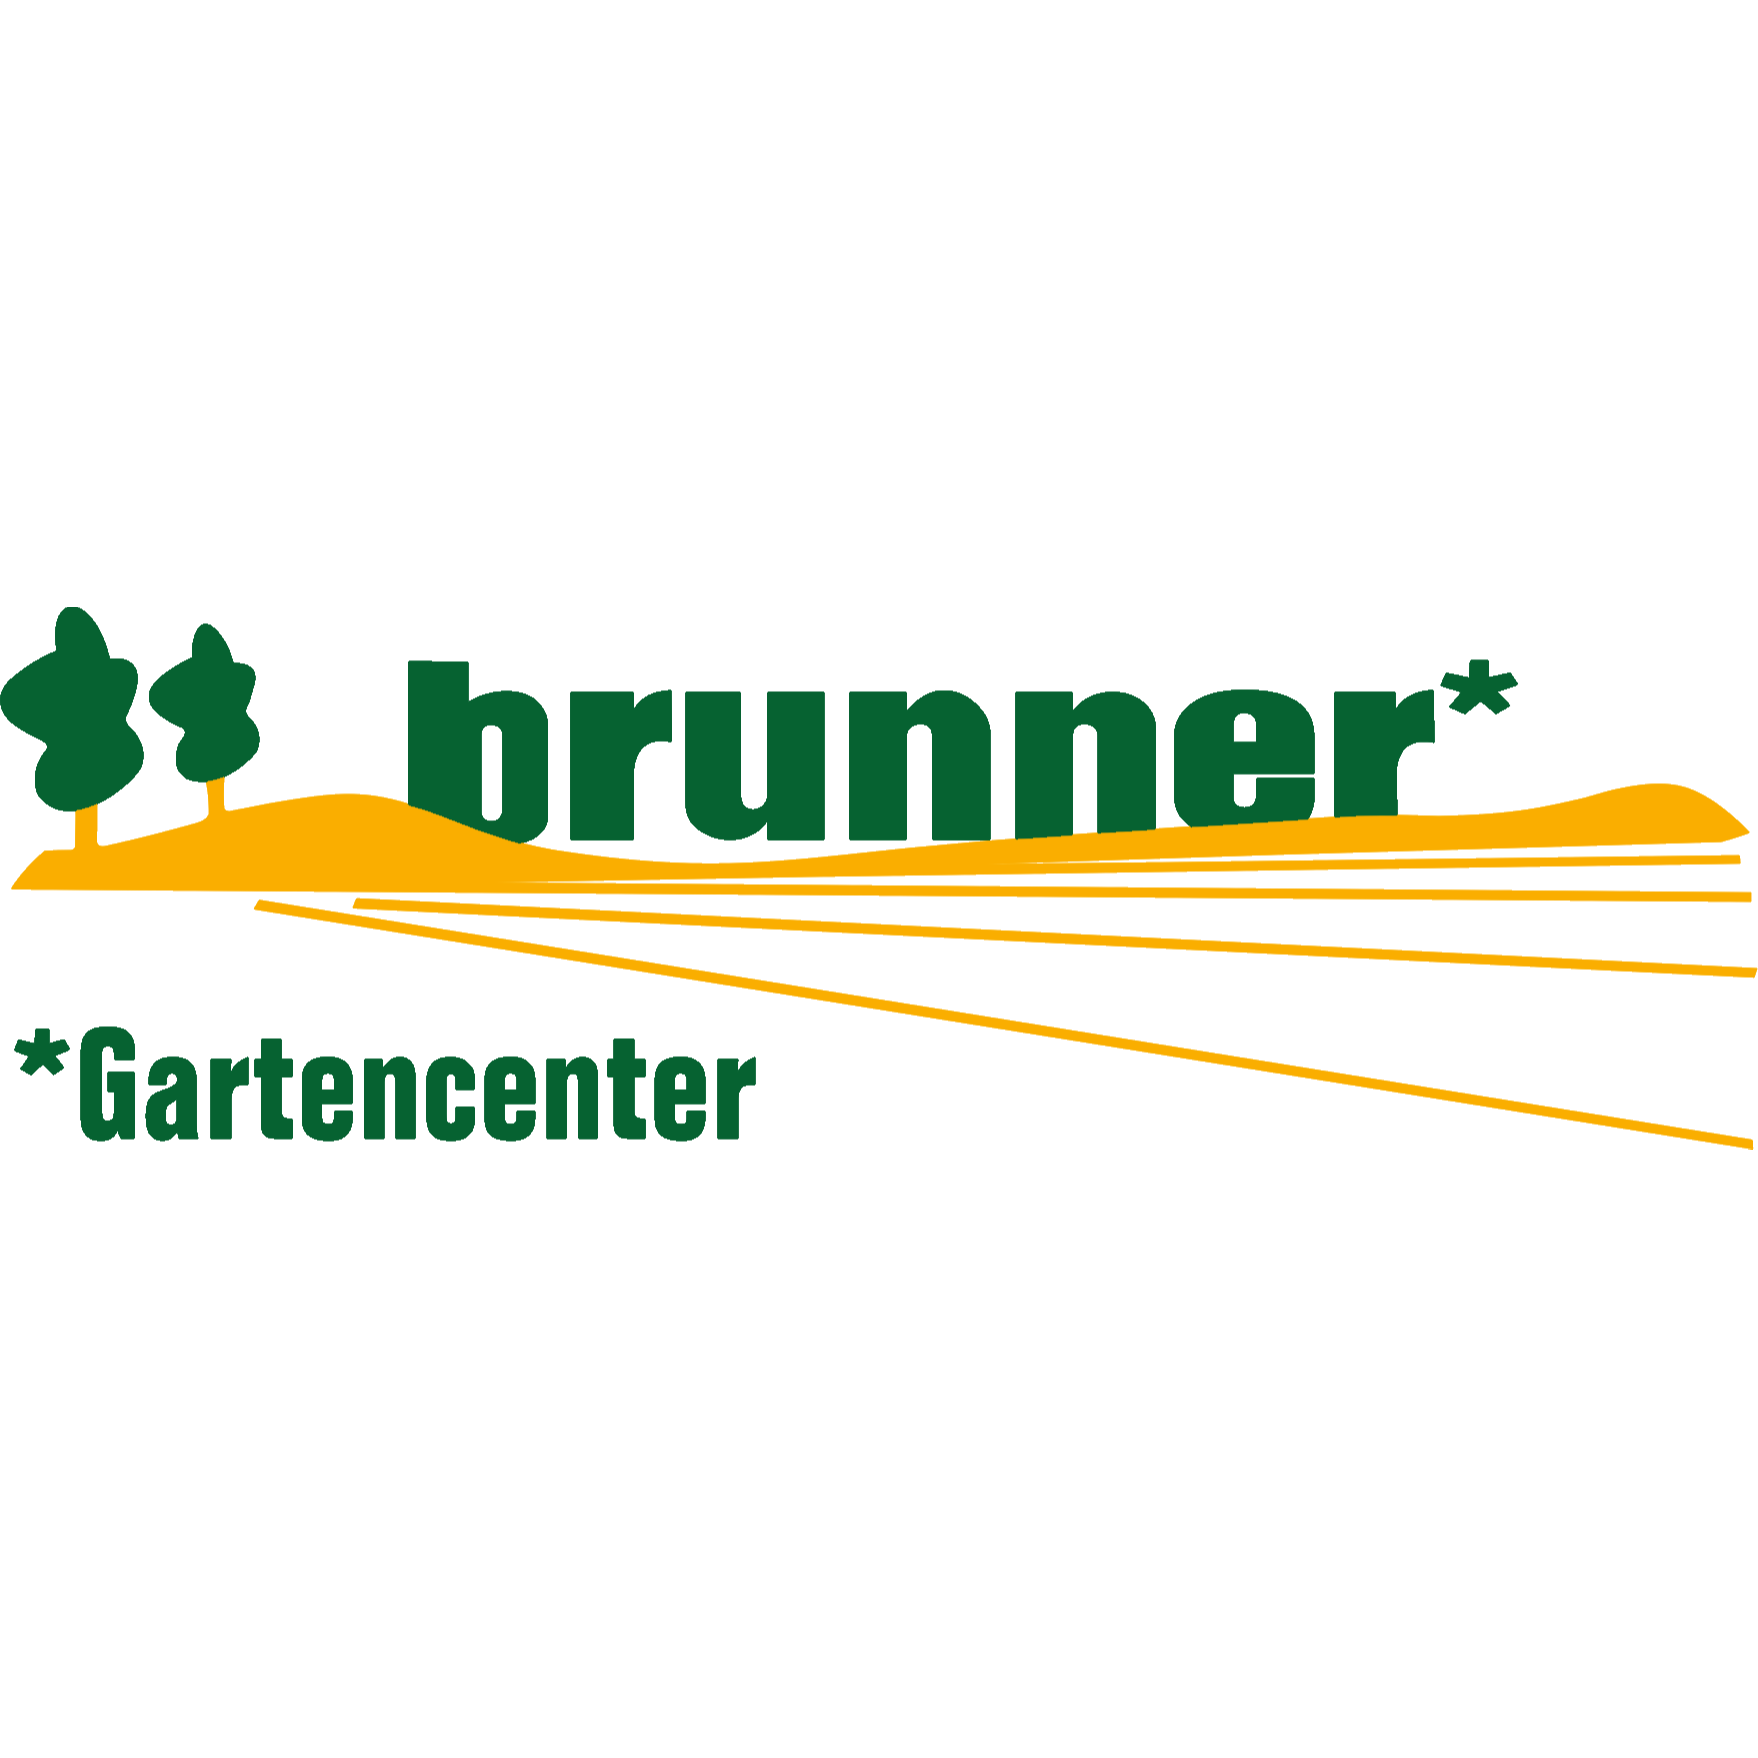 Gartencenter Brunner in Wörth an der Donau - Logo